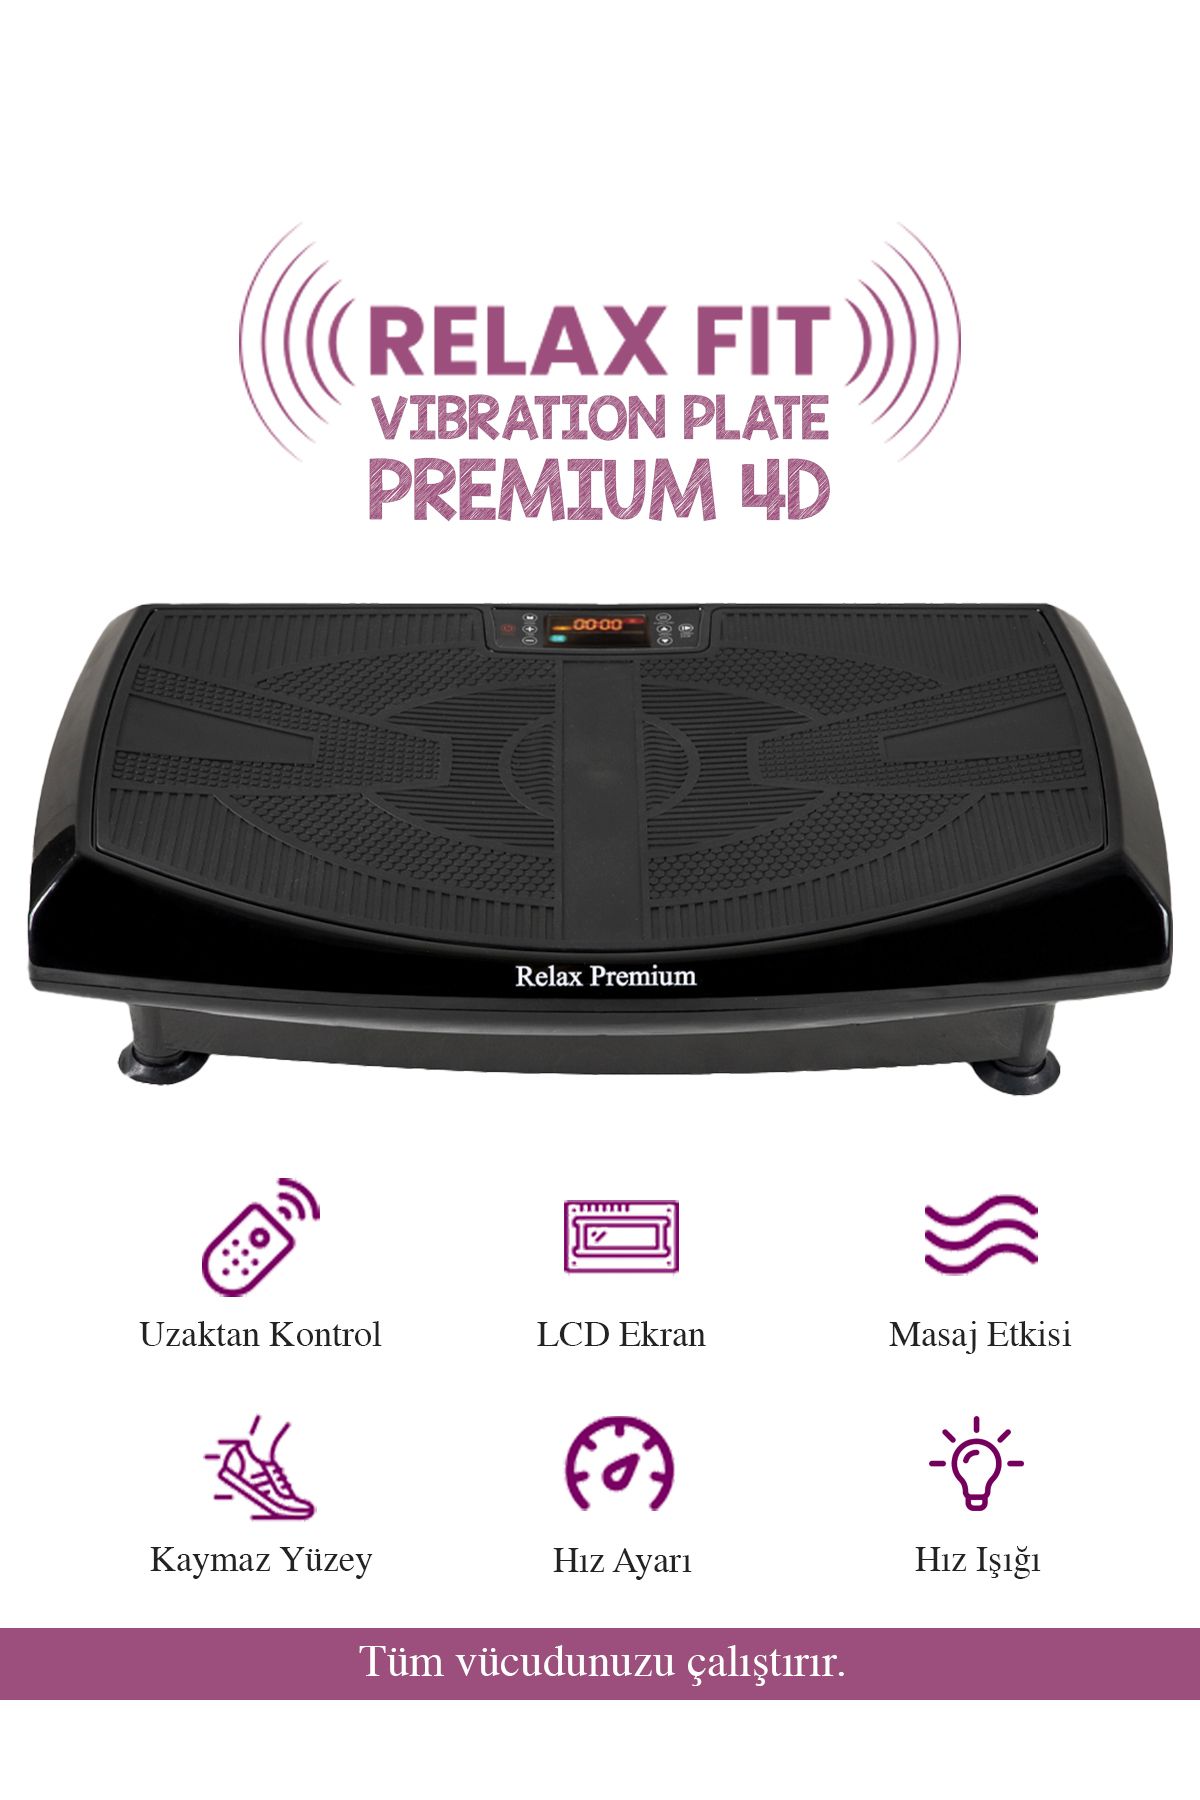 Relax Fit Premium 4d-7in1 Vibration Plate Titreşimli Spor Egzersiz Fitness Aleti Cihazı